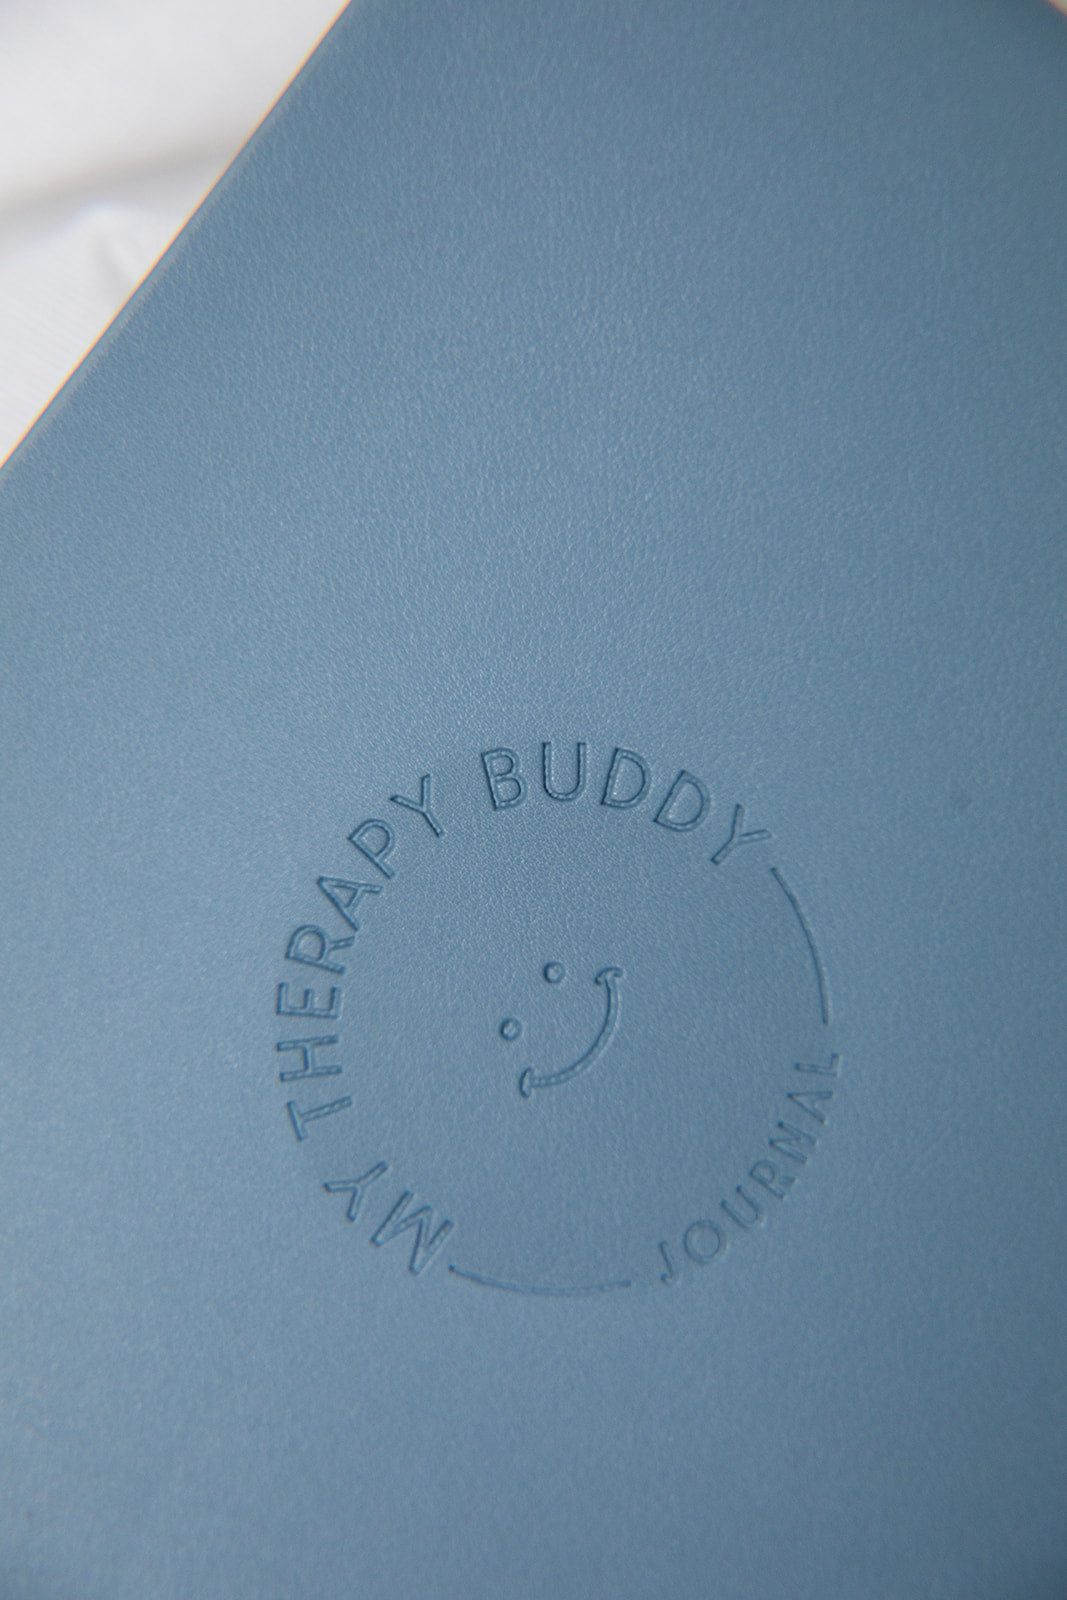 Journal bundle in Feeling Blue